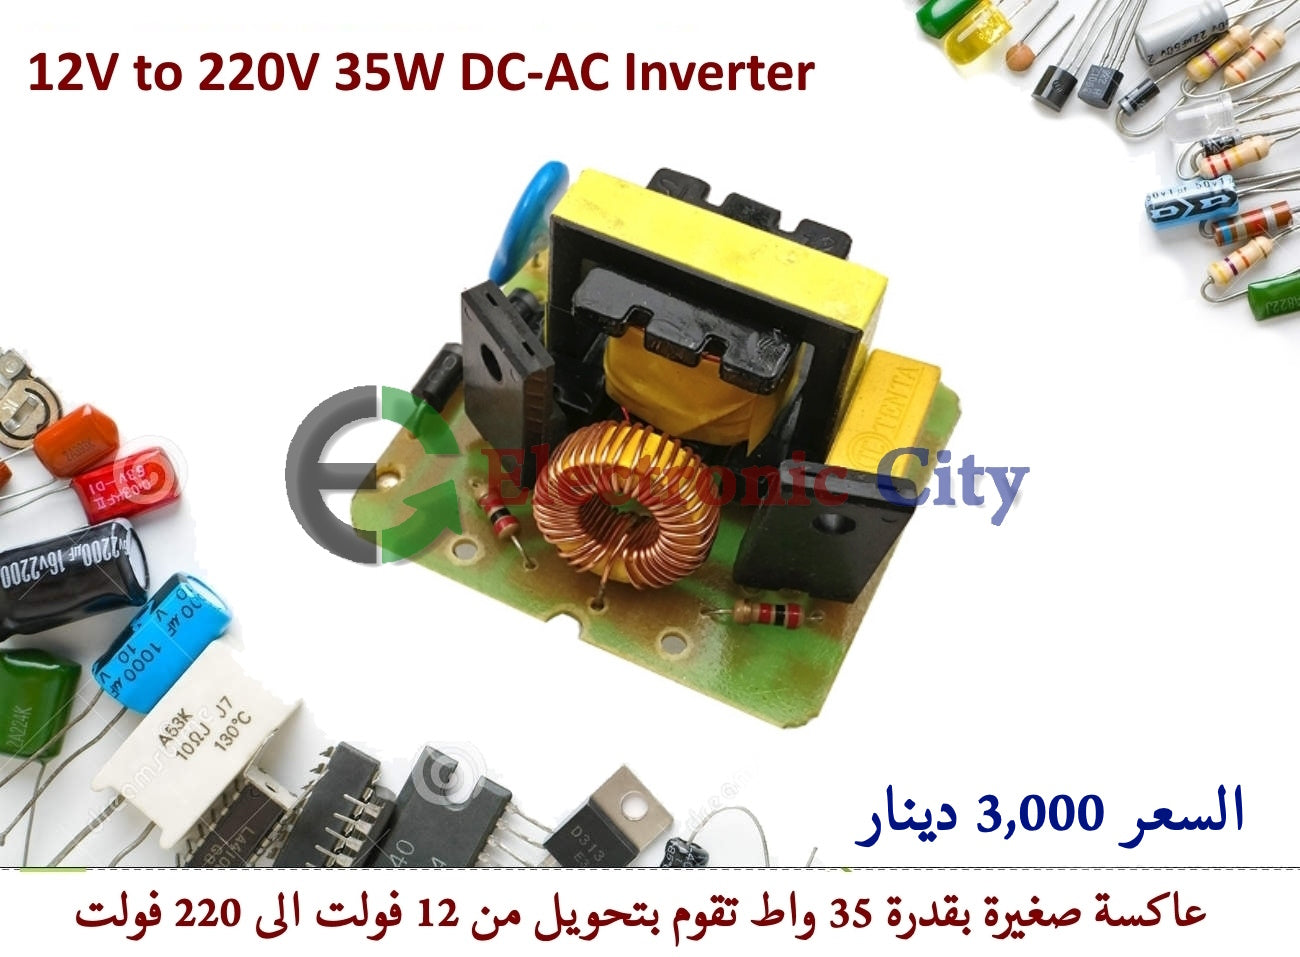 12V to 220V 35W DC-AC Inverter #G5 011904